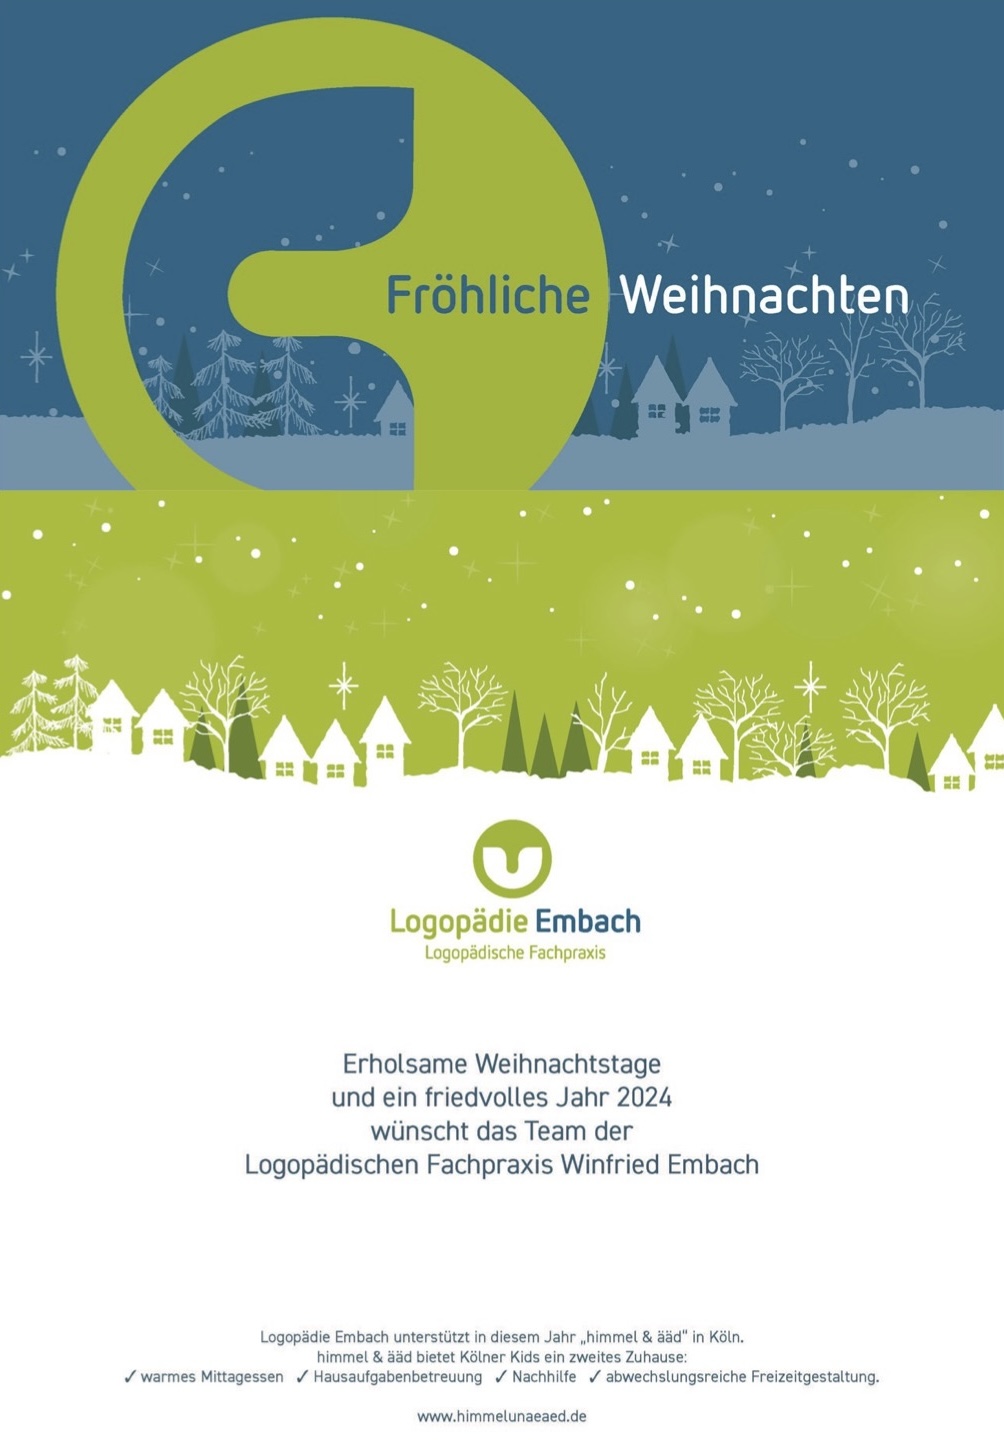 Das Team von Logopädie Embach wünscht frohe Weihnachten!